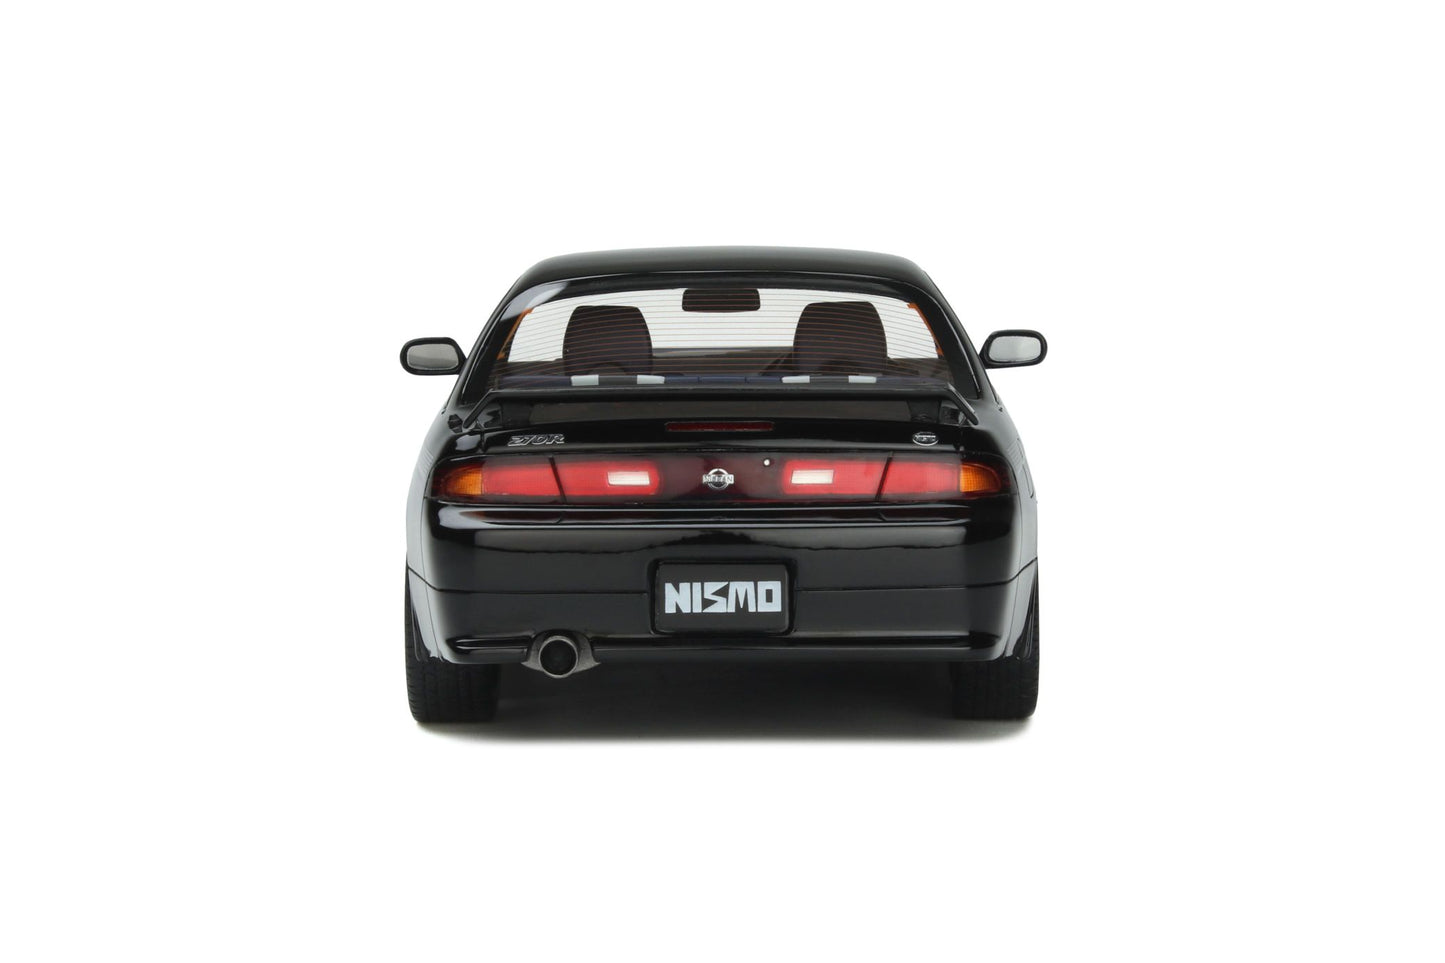 OttOmobile - Nissan Silvia (S14) Nismo 270R (1994) (Black) 1:18 Scale Model Car